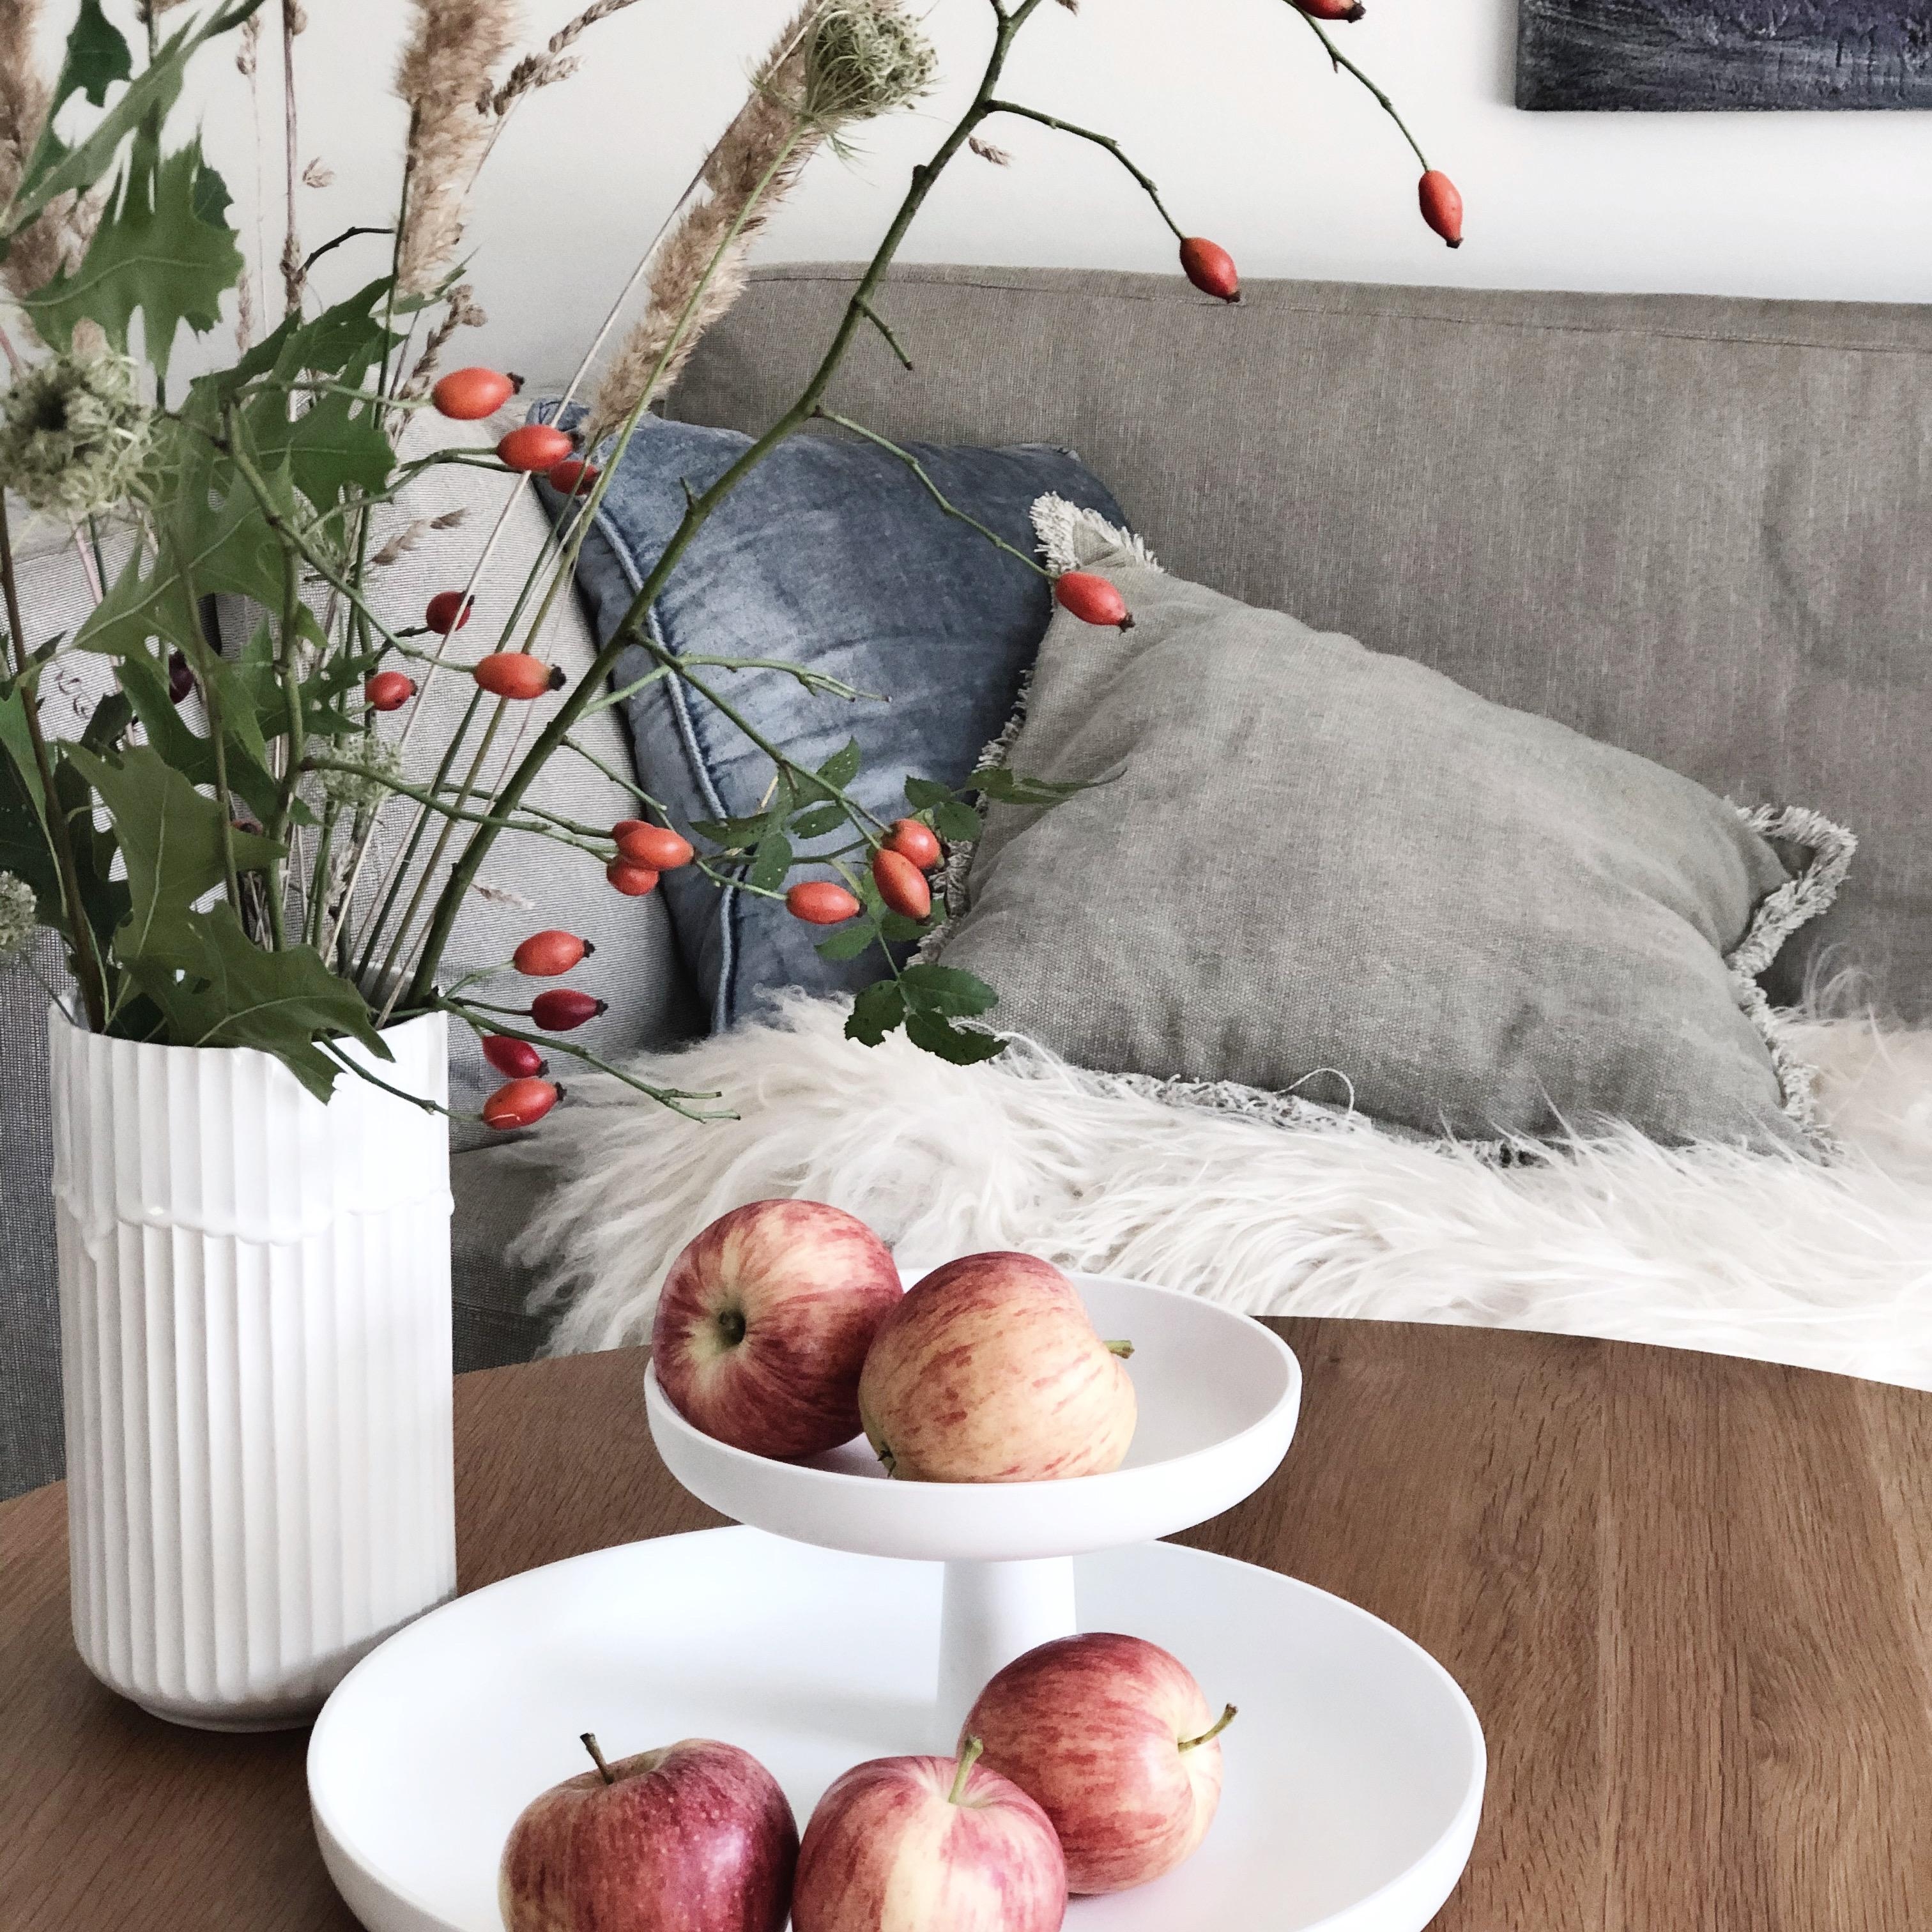 An Apple a day... ❤️🍎
#wohnzimmer #cozy #sofa #beistelltisch